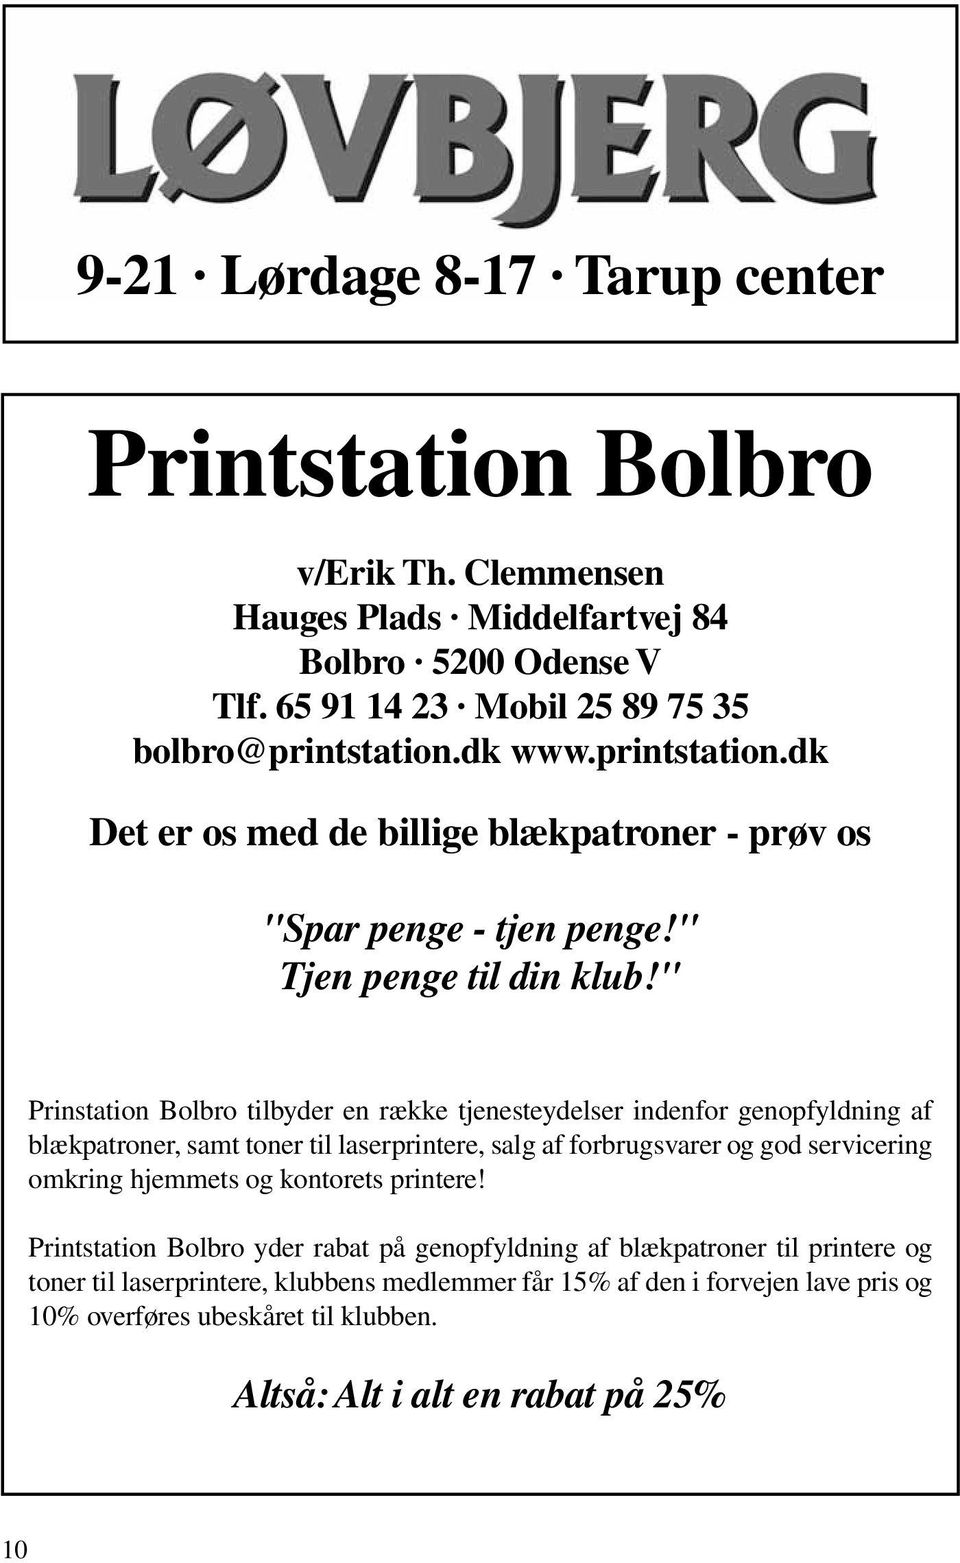 " Prinstation Bolbro tilbyder en række tjenesteydelser indenfor genopfyldning af blækpatroner, samt toner til laserprintere, salg af forbrugsvarer og god servicering omkring hjemmets og